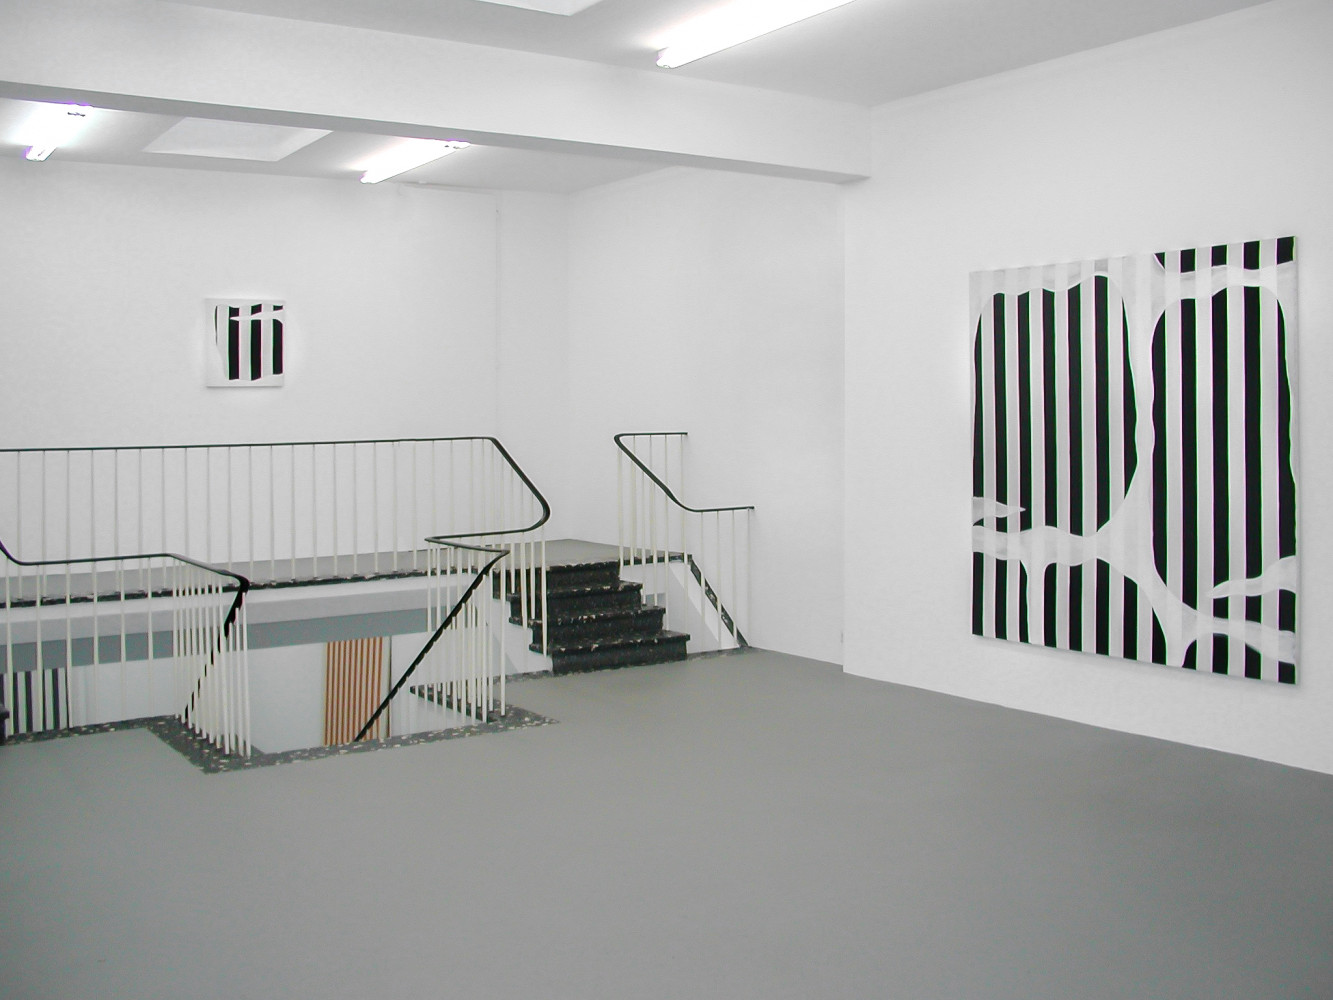 Daniel Buren, Installation view, Buchmann Galerie Köln, 2002